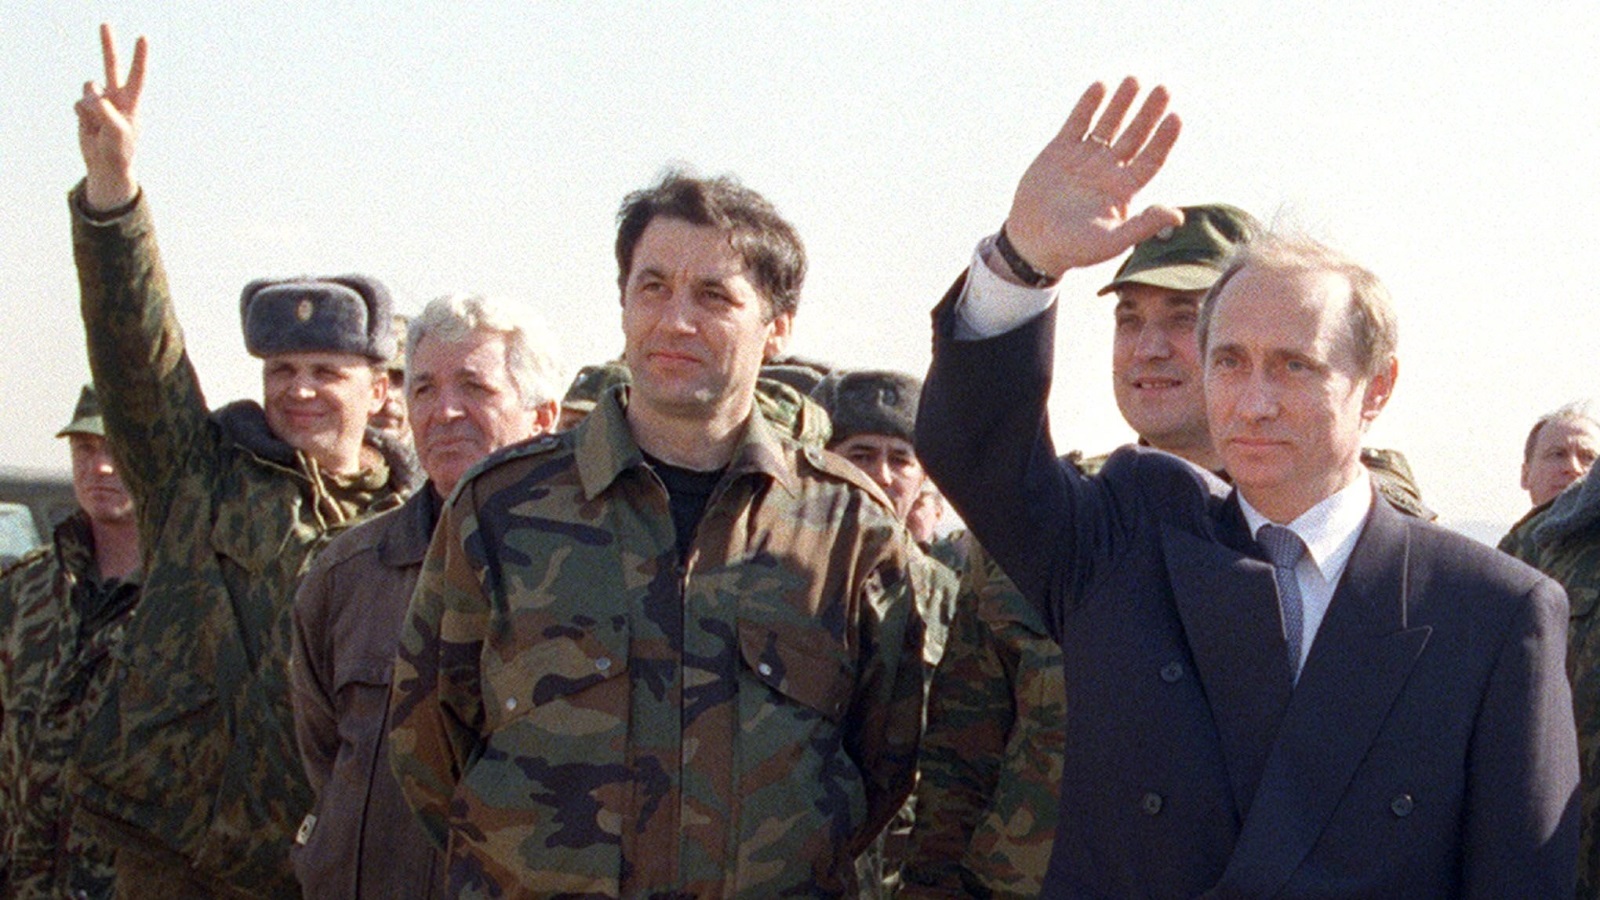  بوتين رفقة الجنود الروس بالعاصمة الشيشانية غروزني في مارس/آذار 2000 (الأوروبية)